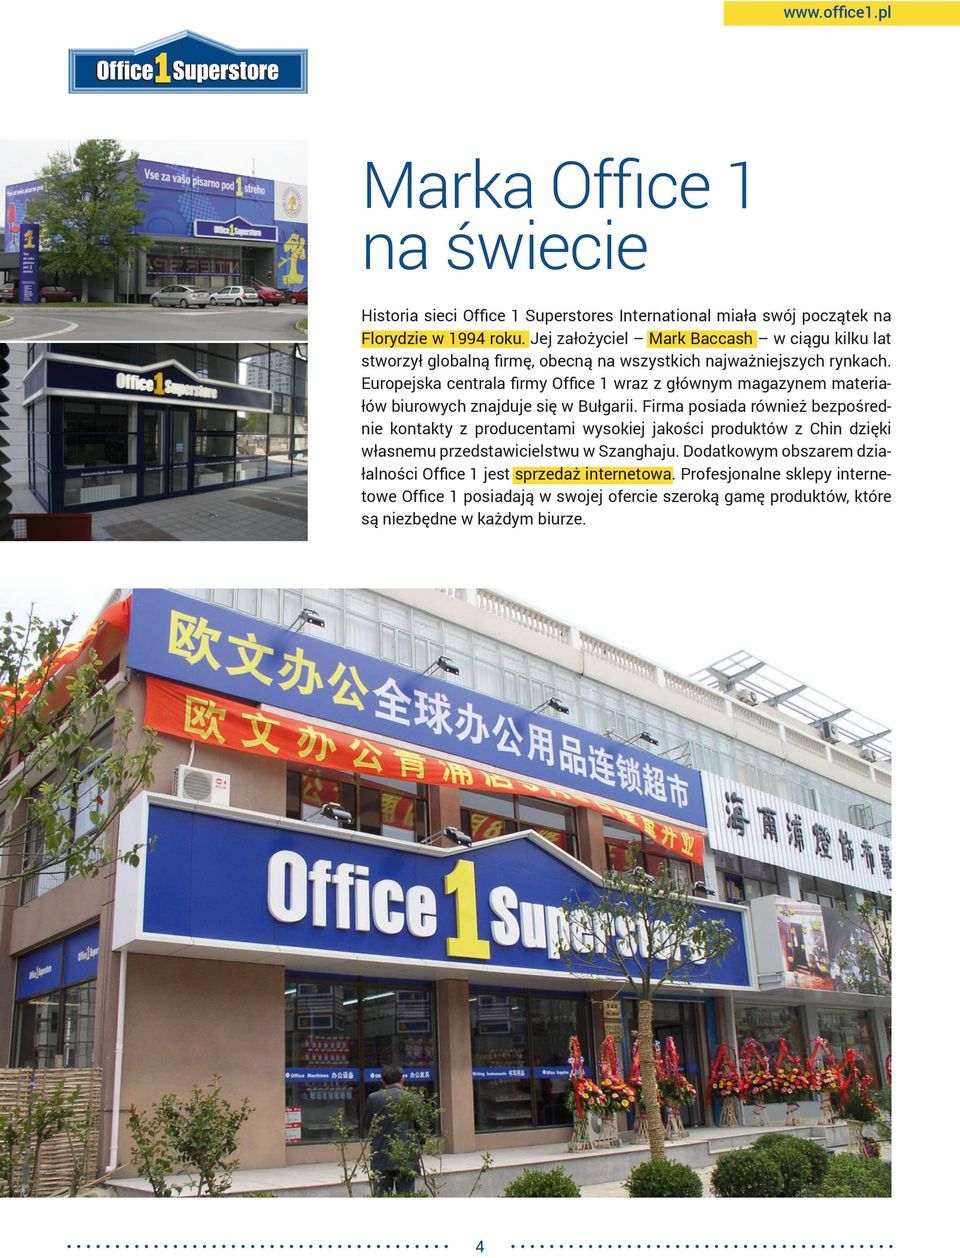 Europejska centrala firmy wraz z głównym magazynem materiałów biurowych znajduje się w Bułgarii.